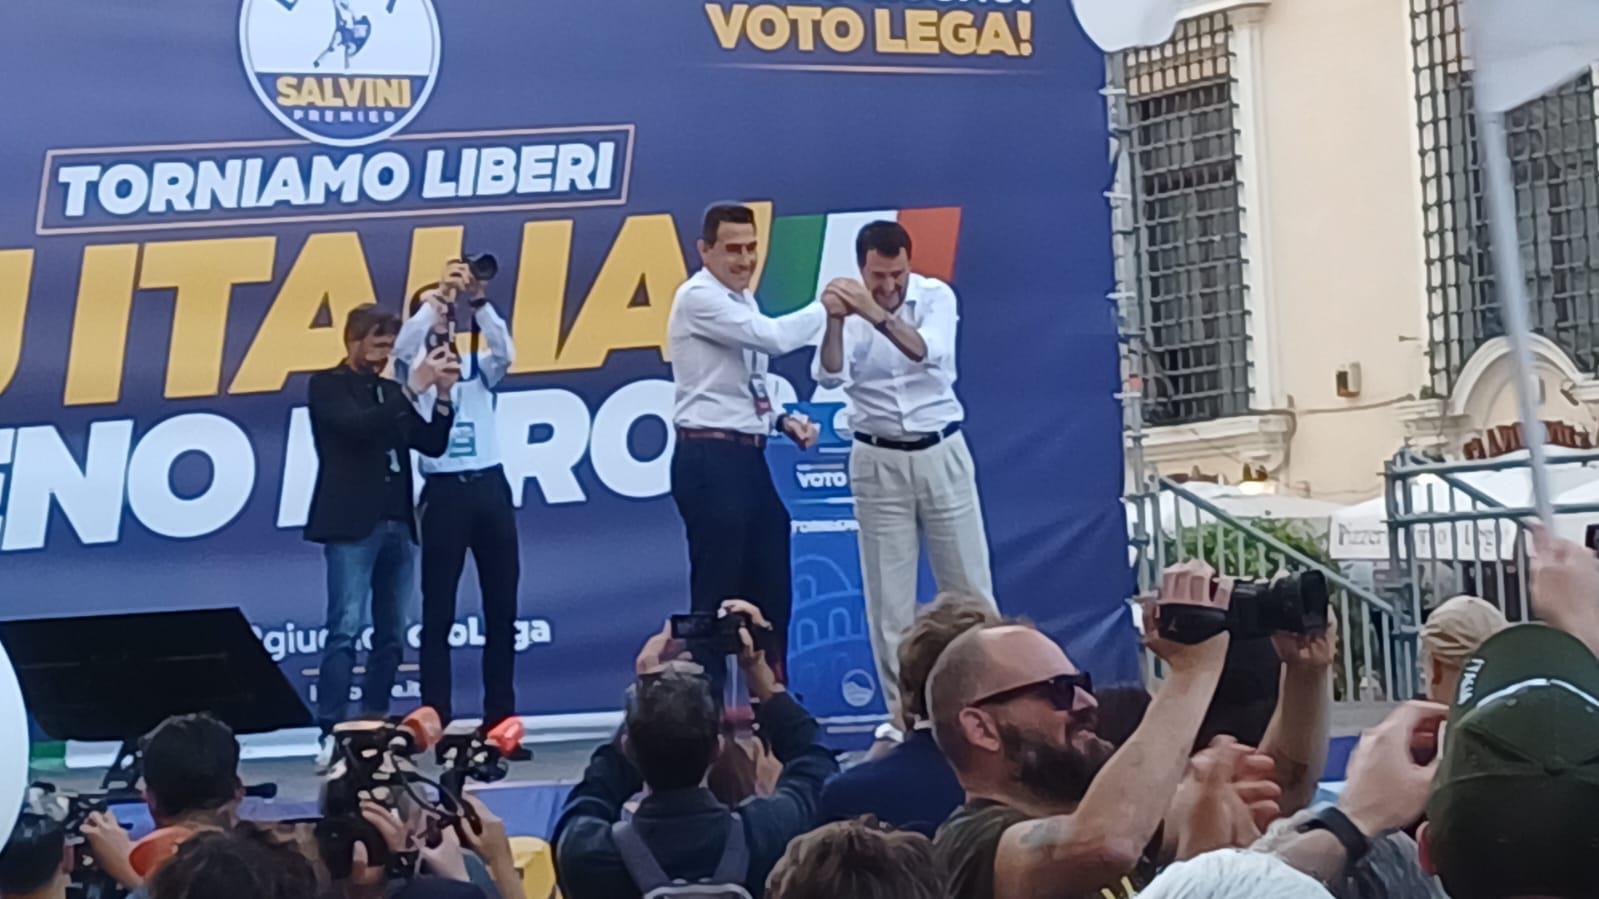 Vannacci sul palco con Salvini insiste: Il dado è tratto - fate una 